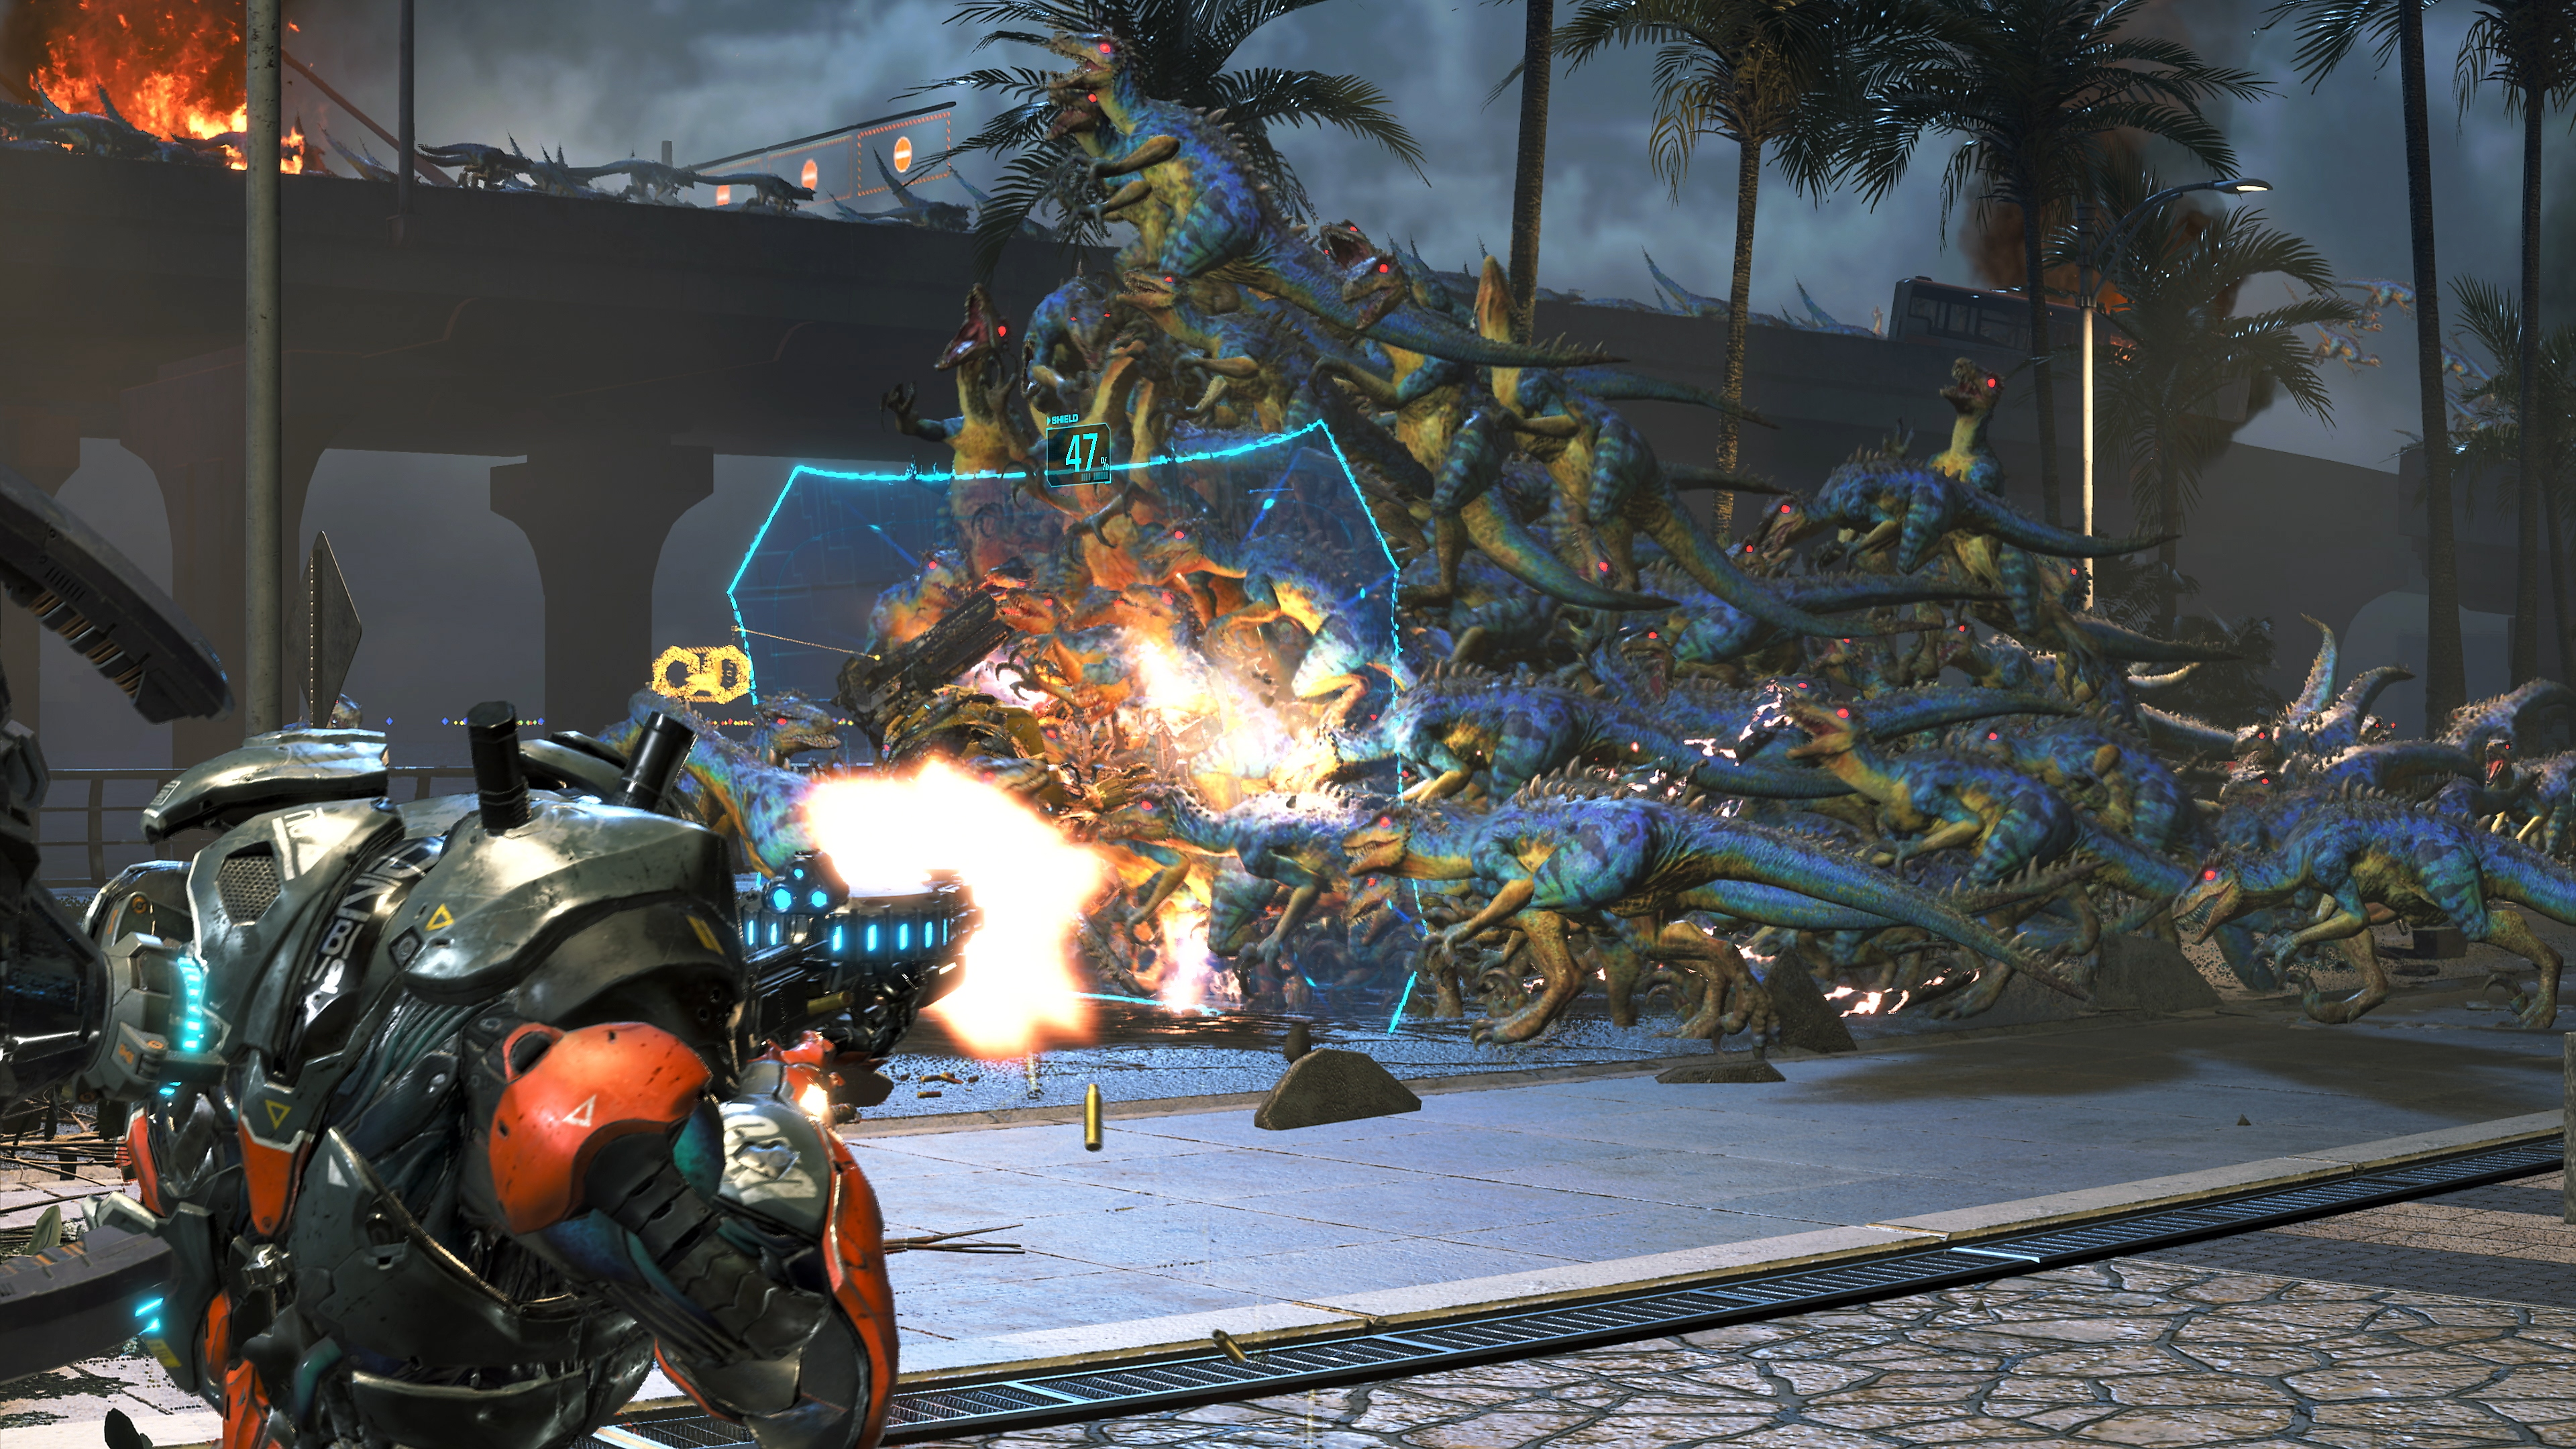 لقطة شاشة للعبة Exoprimal يظهر فيها حشد من الديناصورات الزرقاء والصفراء تركض نحو حاجز، بينما تطلق إحدى الشخصيات النيران عليها